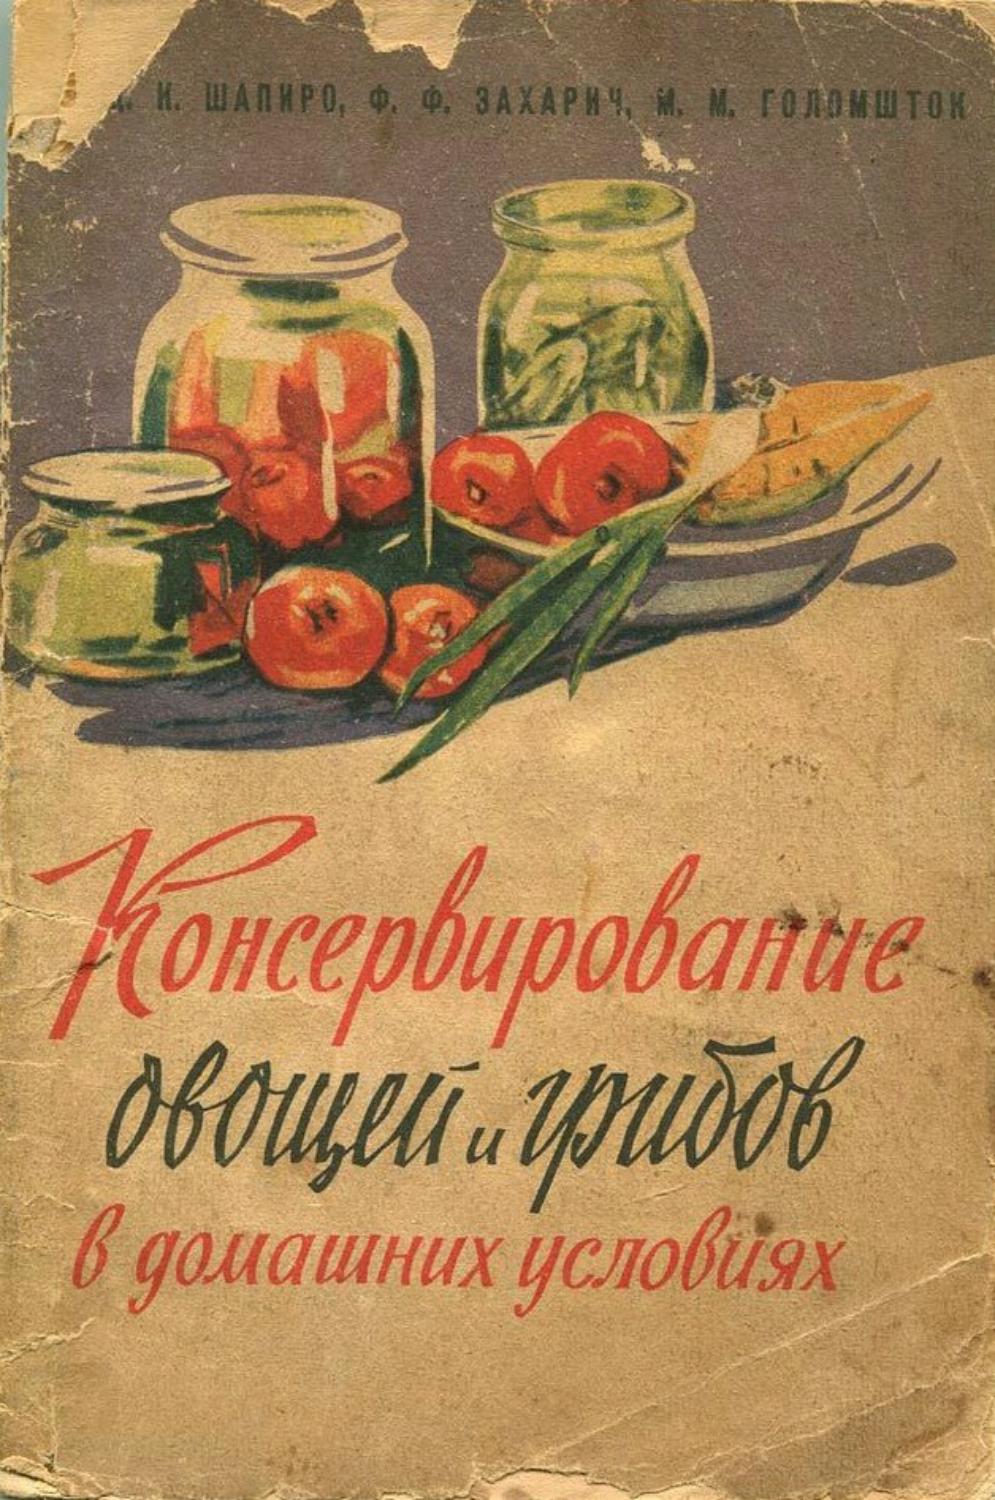 Консервирование овощей и грибов в домашних условиях -1961 ссср